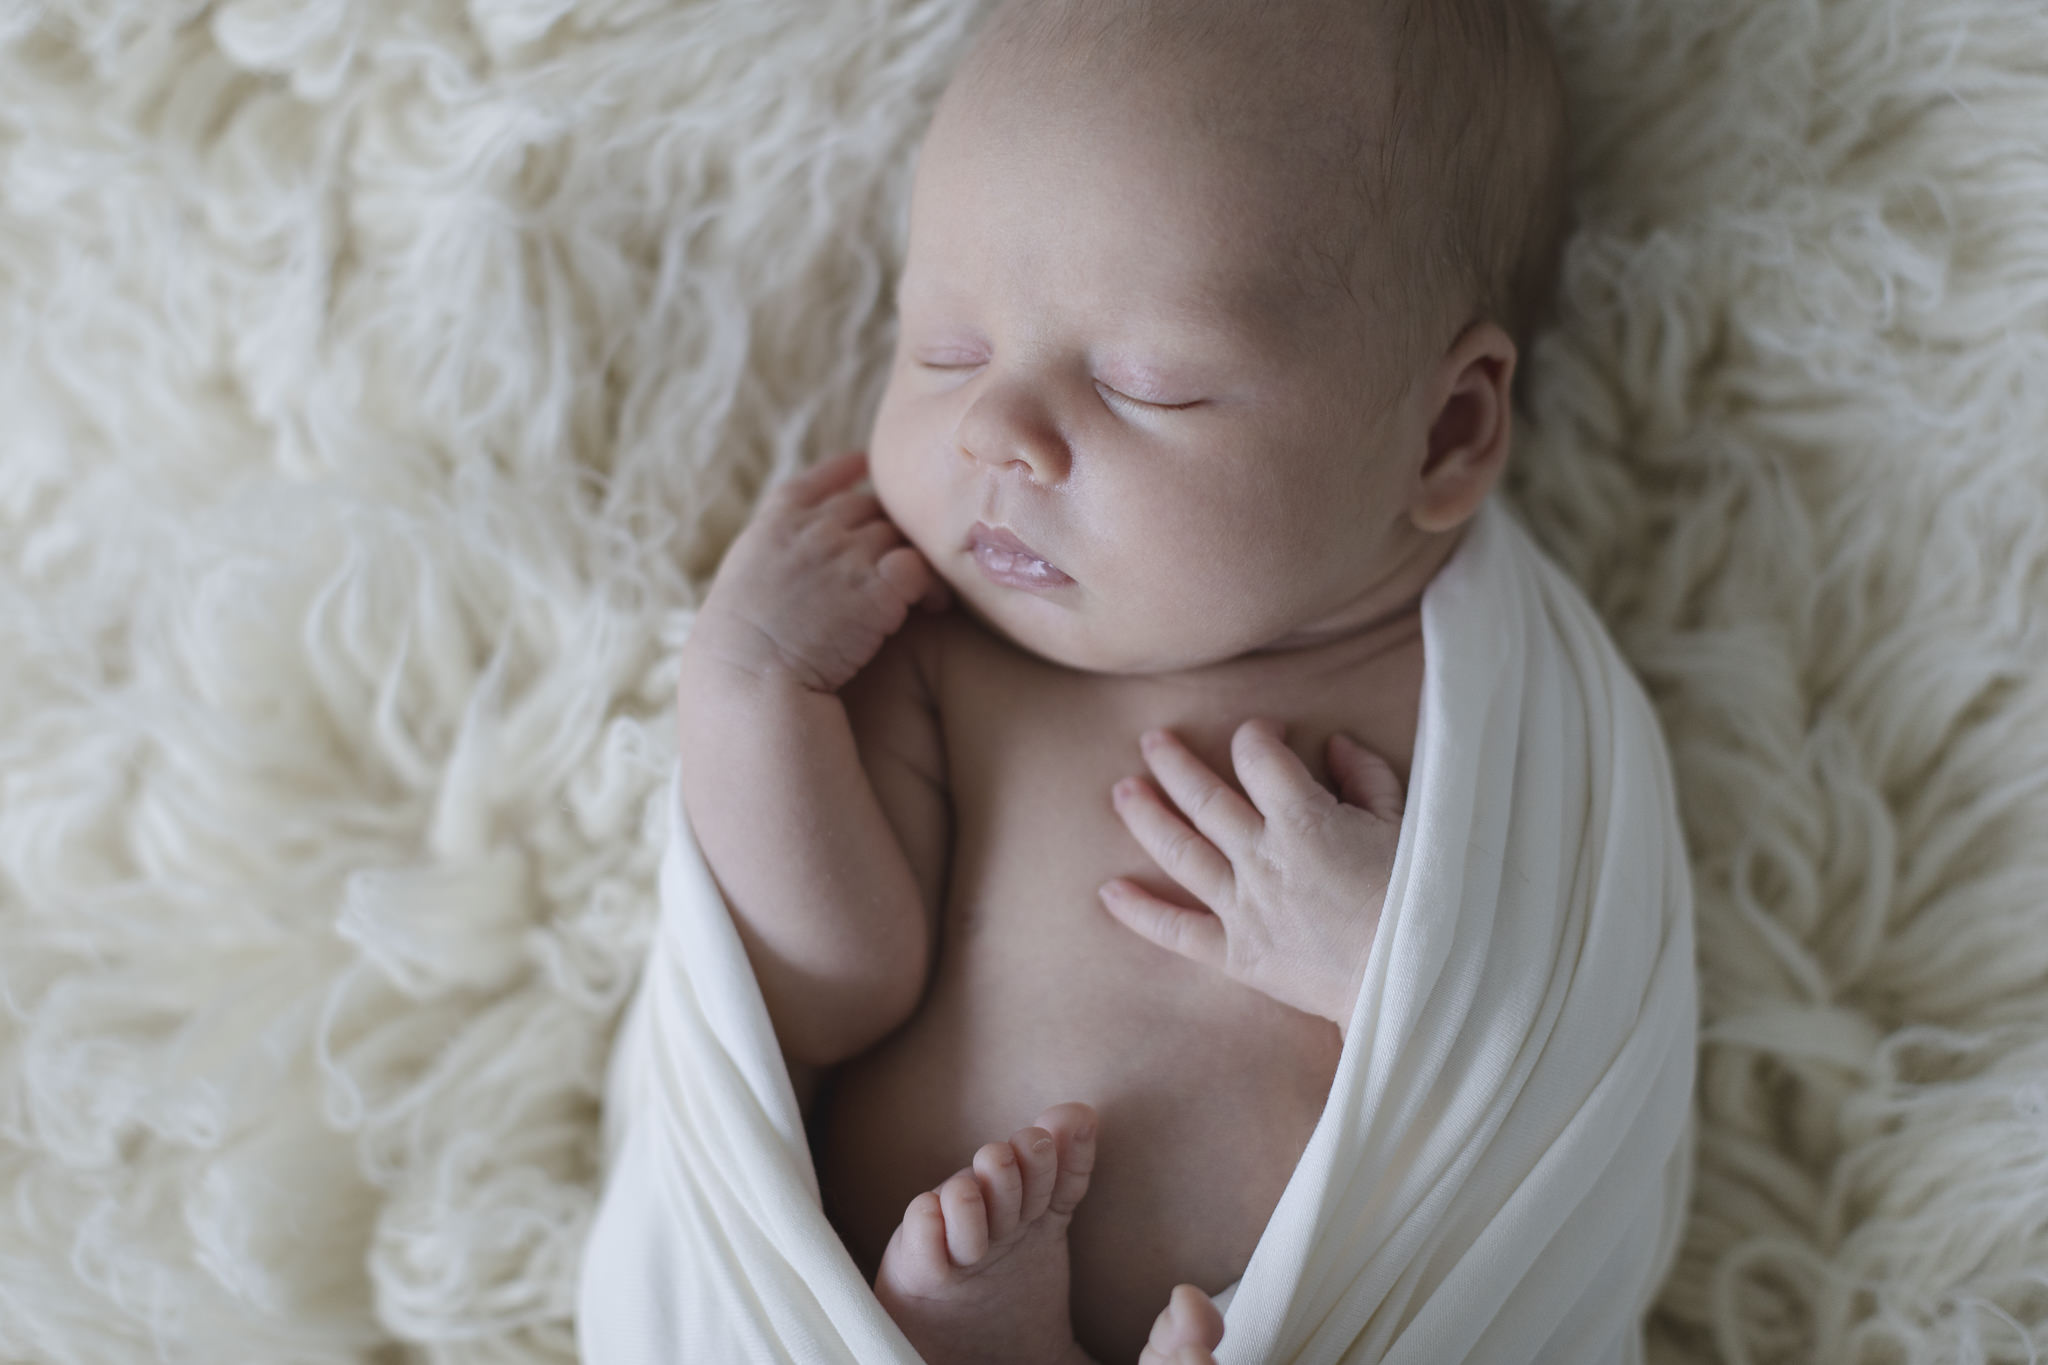 Babyfotograf Hamburg - Baby liegt in Wrap eingewickelt auf einem Flokati